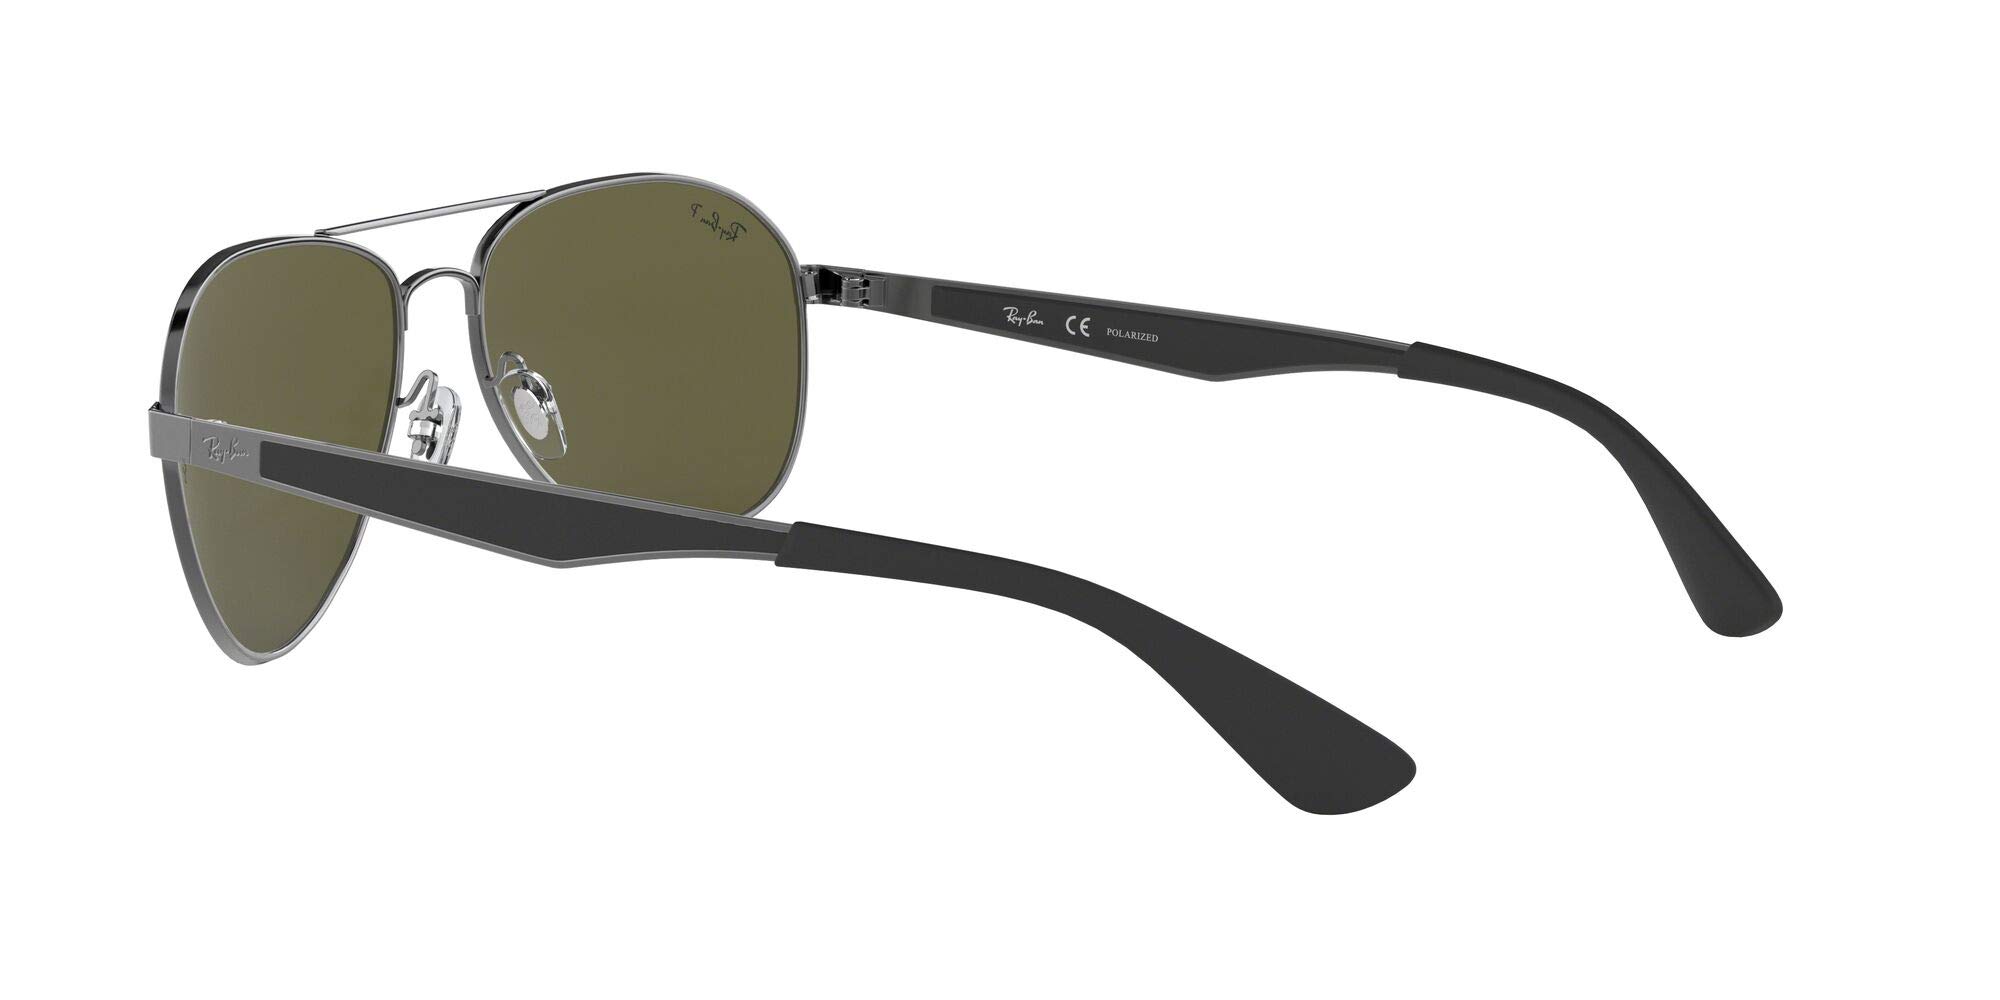 Mua Ray-Ban Rb3549 Aviator Sunglasses trên Amazon Mỹ chính hãng 2023 |  Giaonhan247